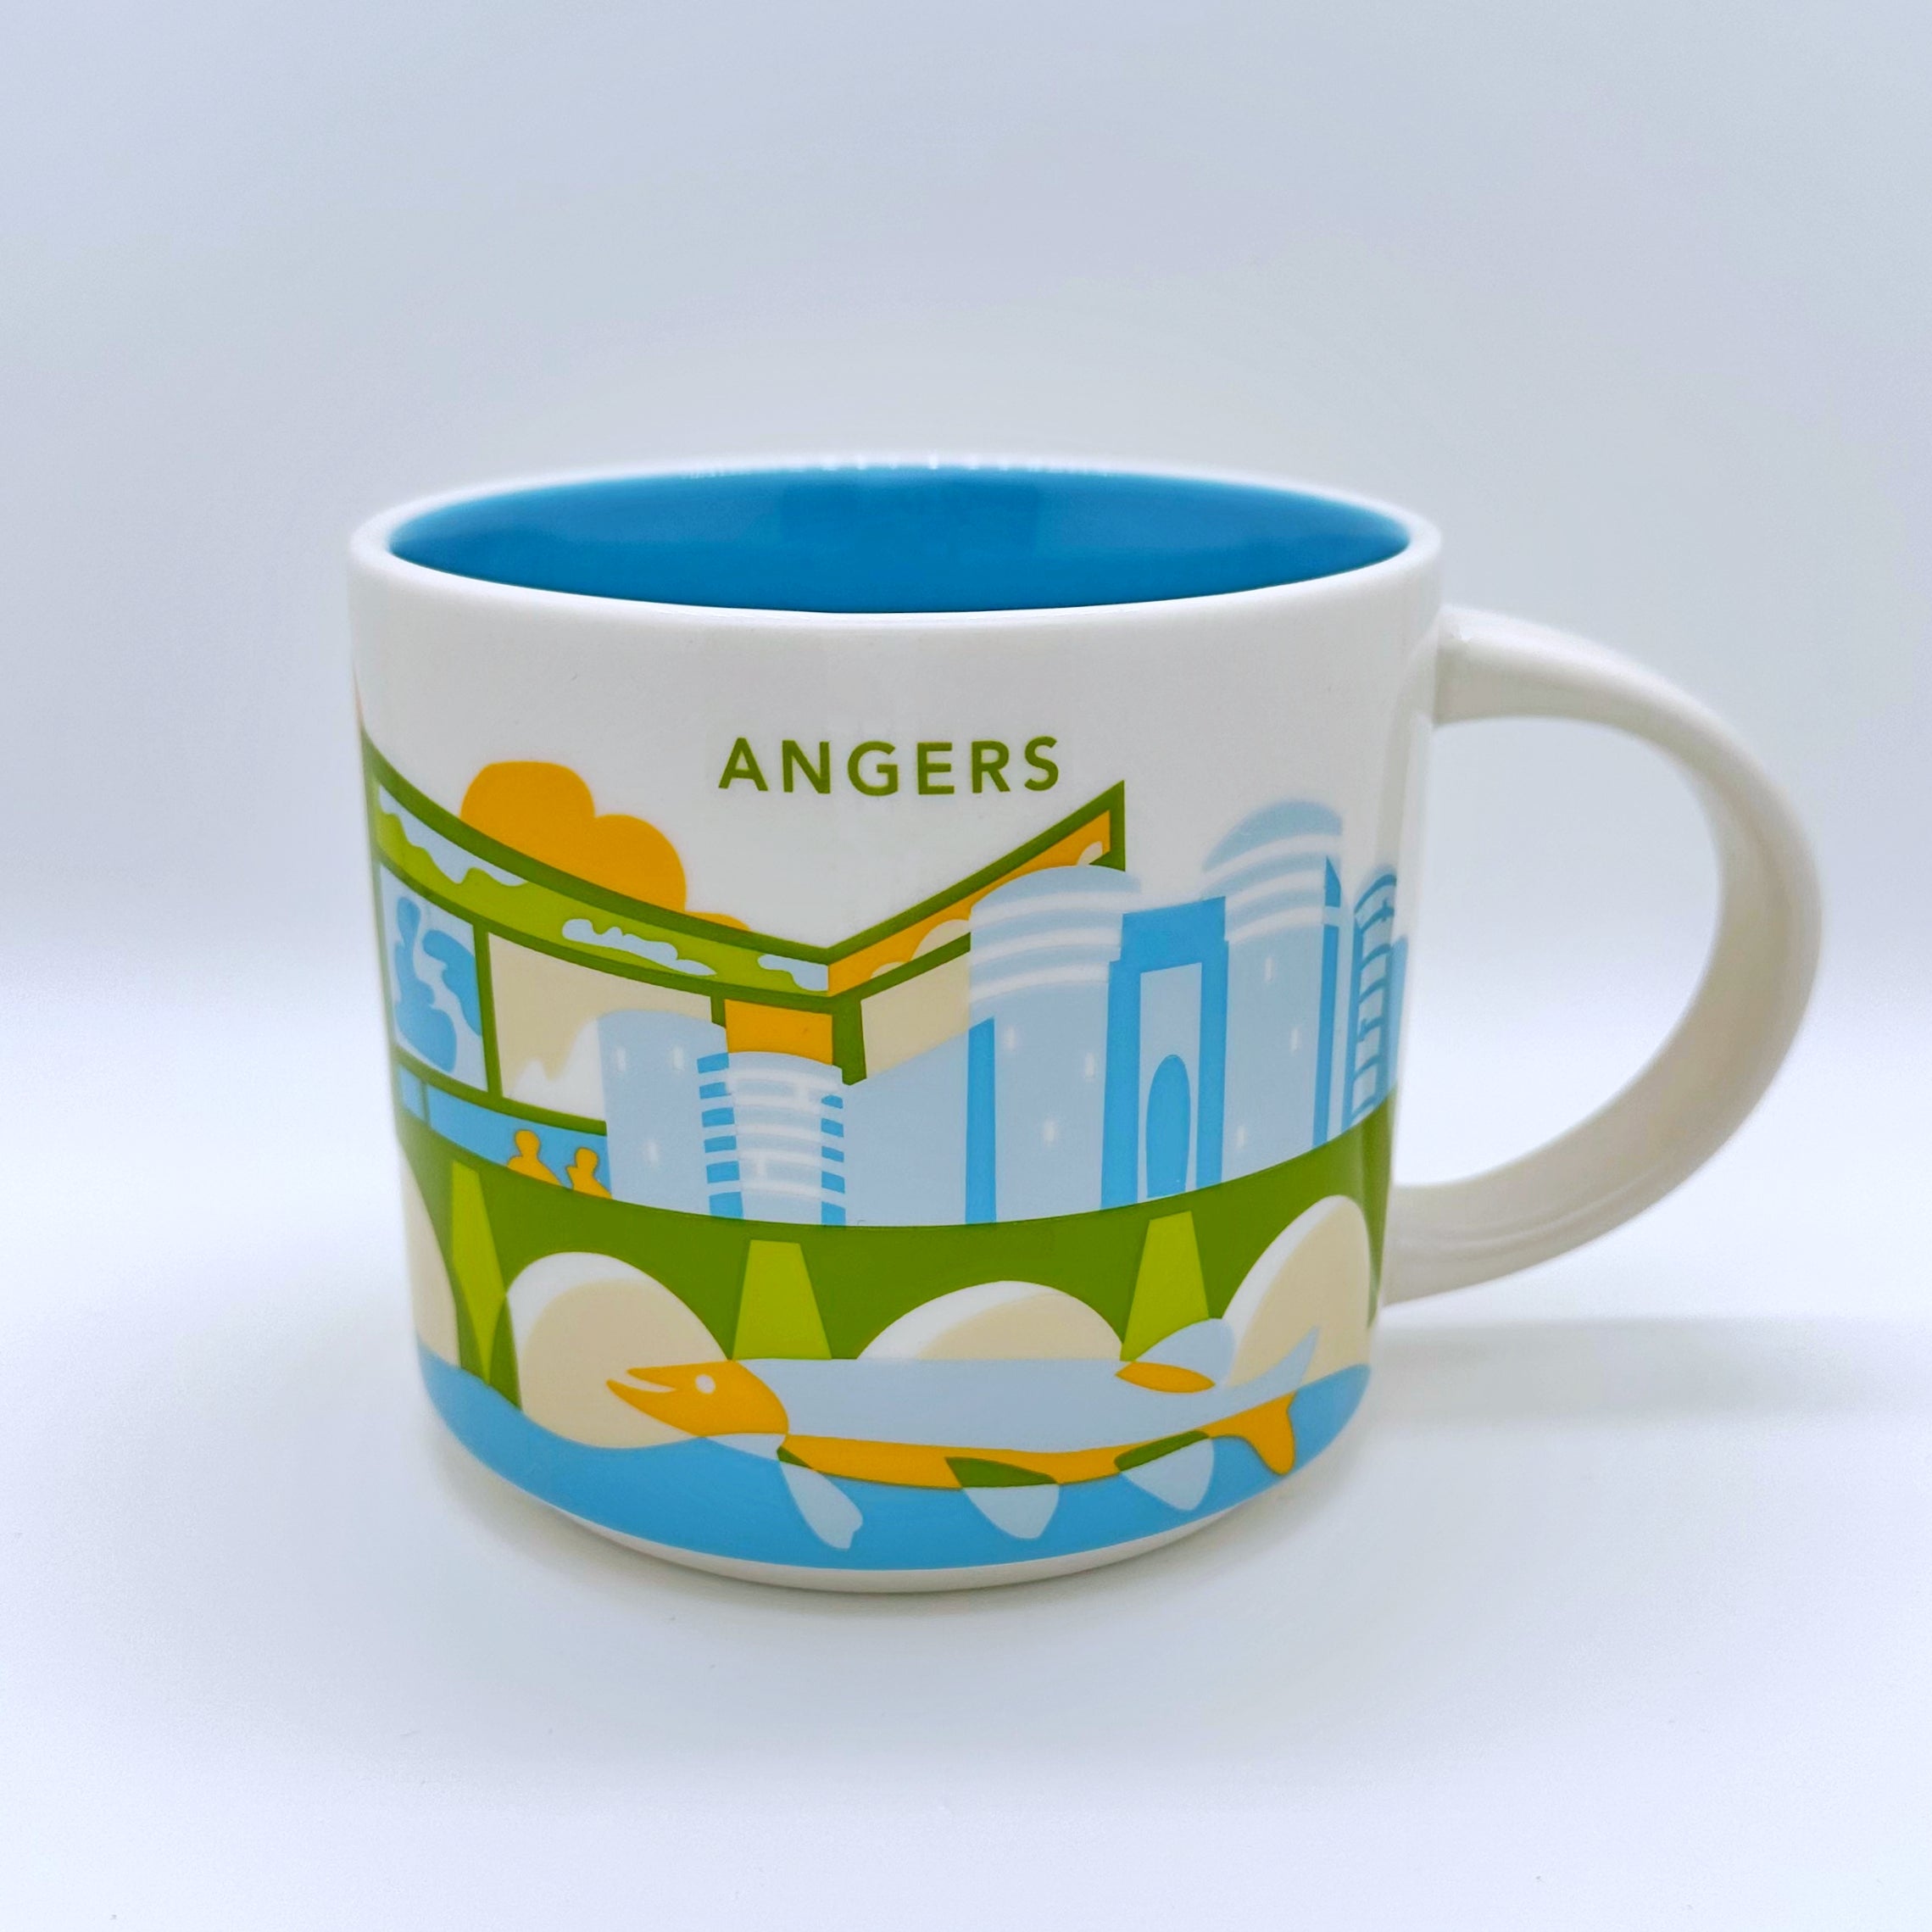 Kaffee Tee und Cappuccino Tasse von Starbucks mit gemalten Bildern aus der Stadt Angers